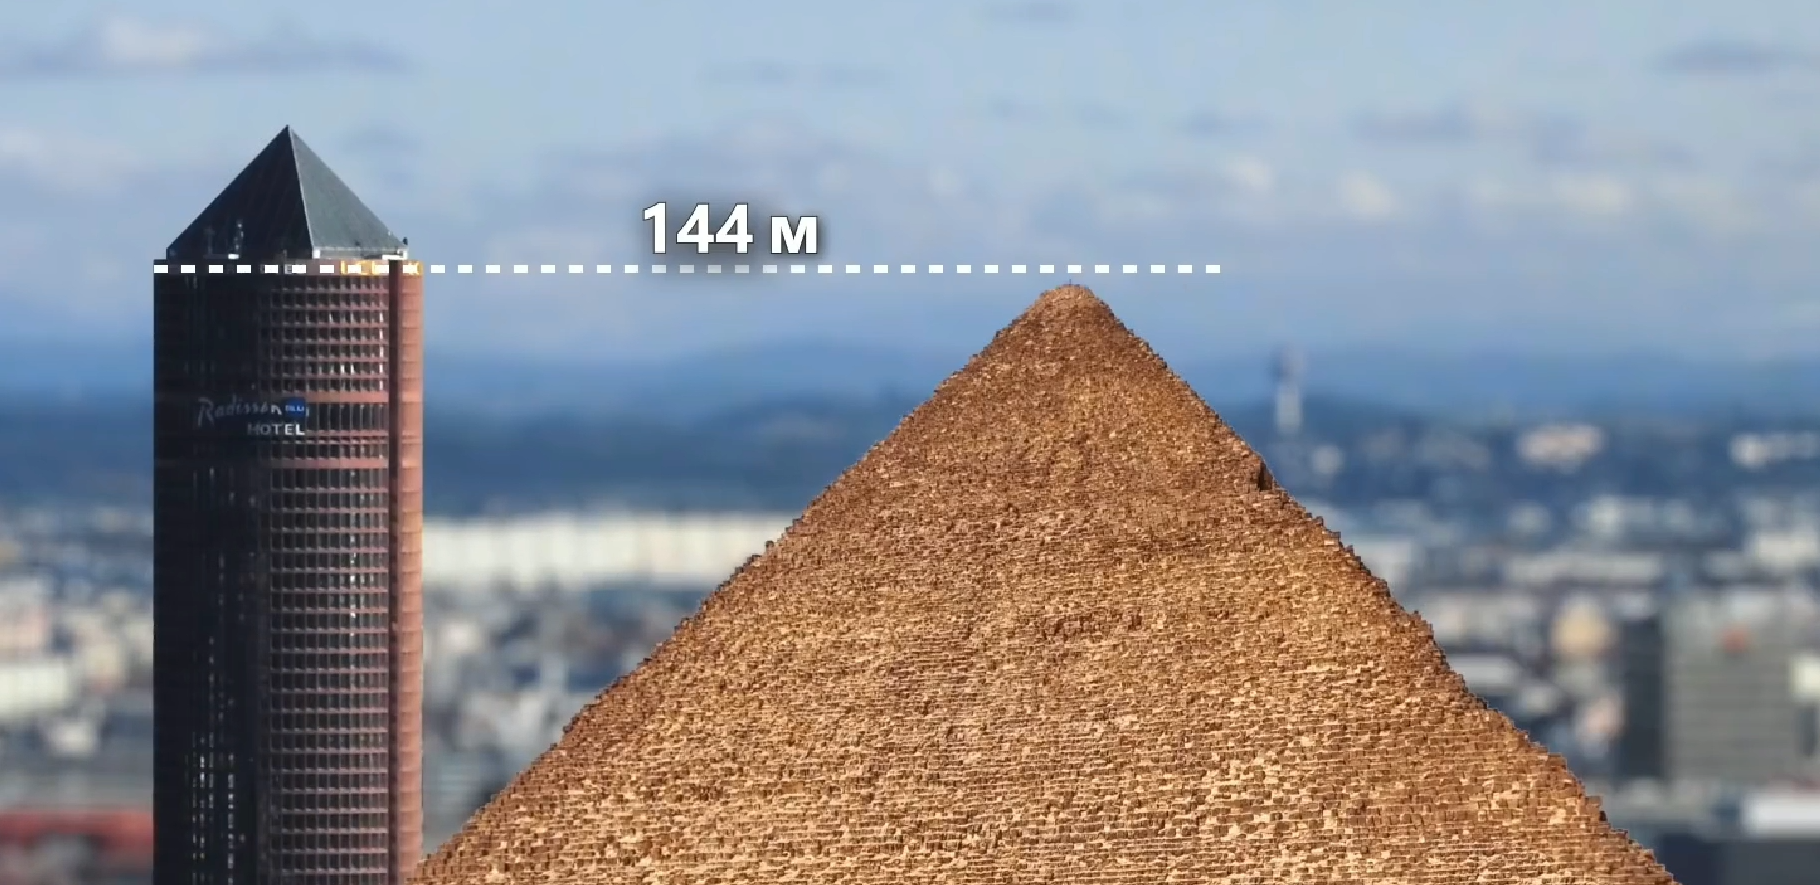 金字塔怎么建造的？最新科学解释，揭秘金字塔建造全过程 12